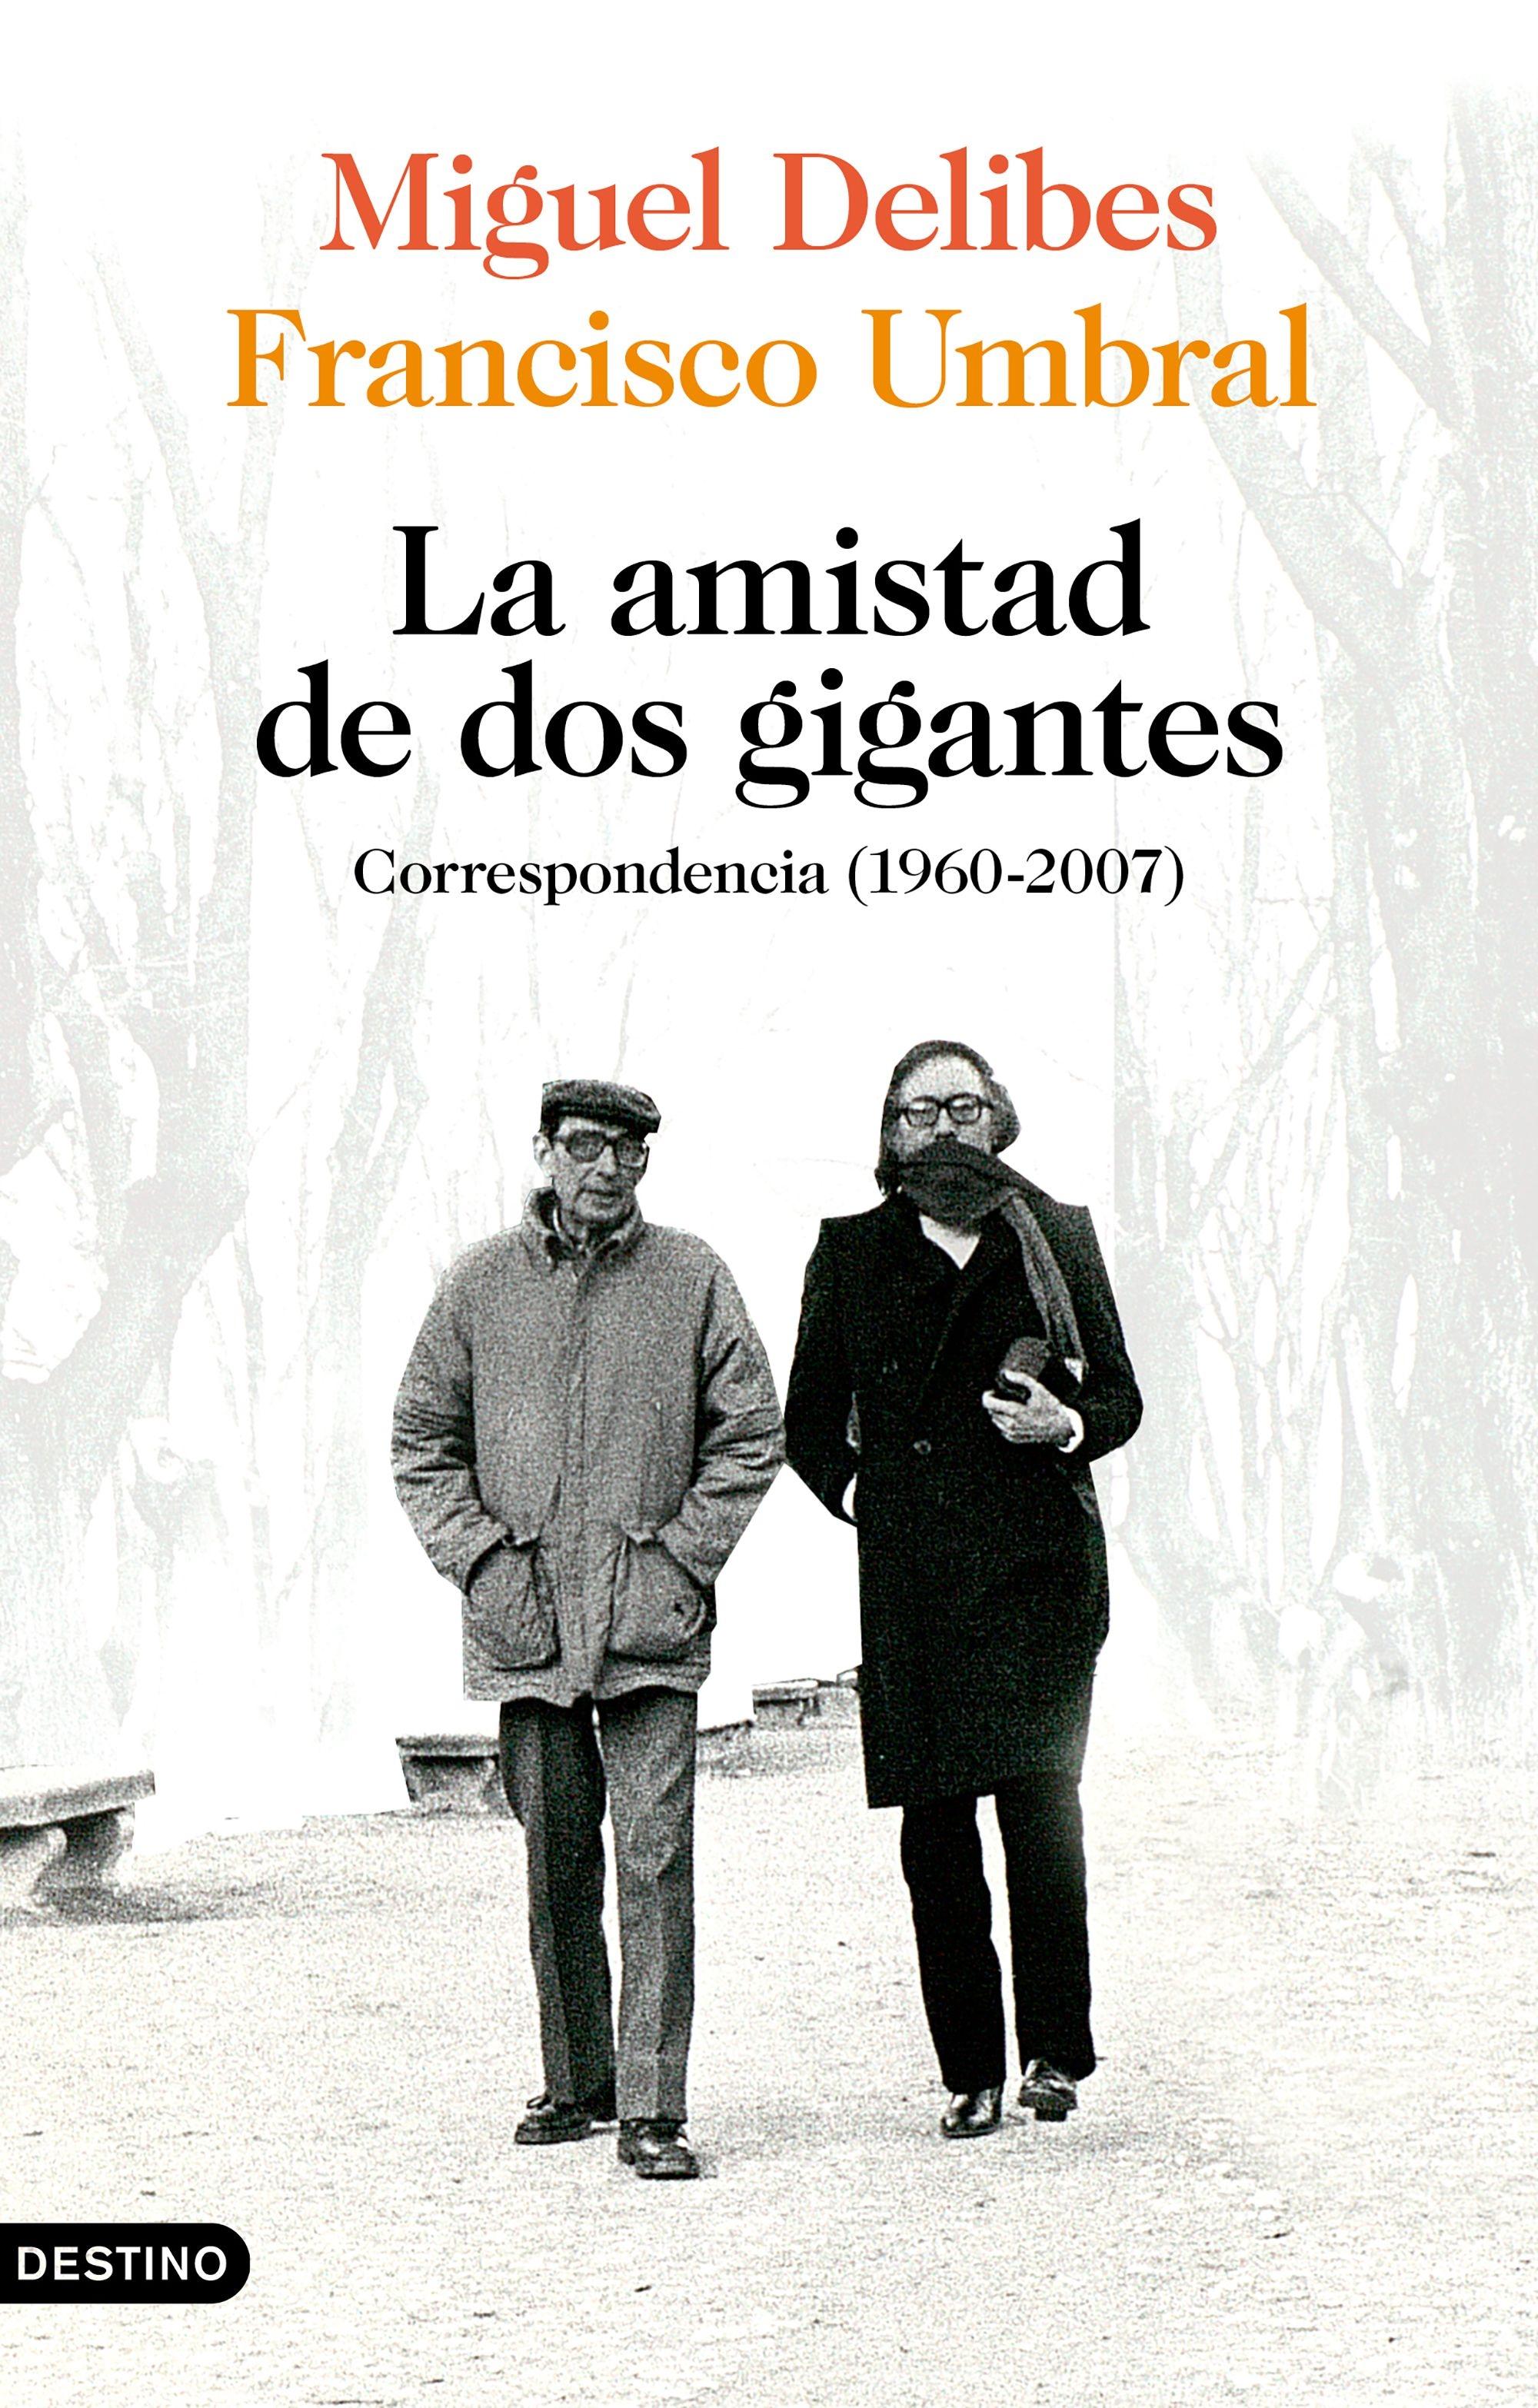 La amistad de dos gigantes, Miguel Delibes y Francisco Umbral "Correspondencia (1960-2007)". 